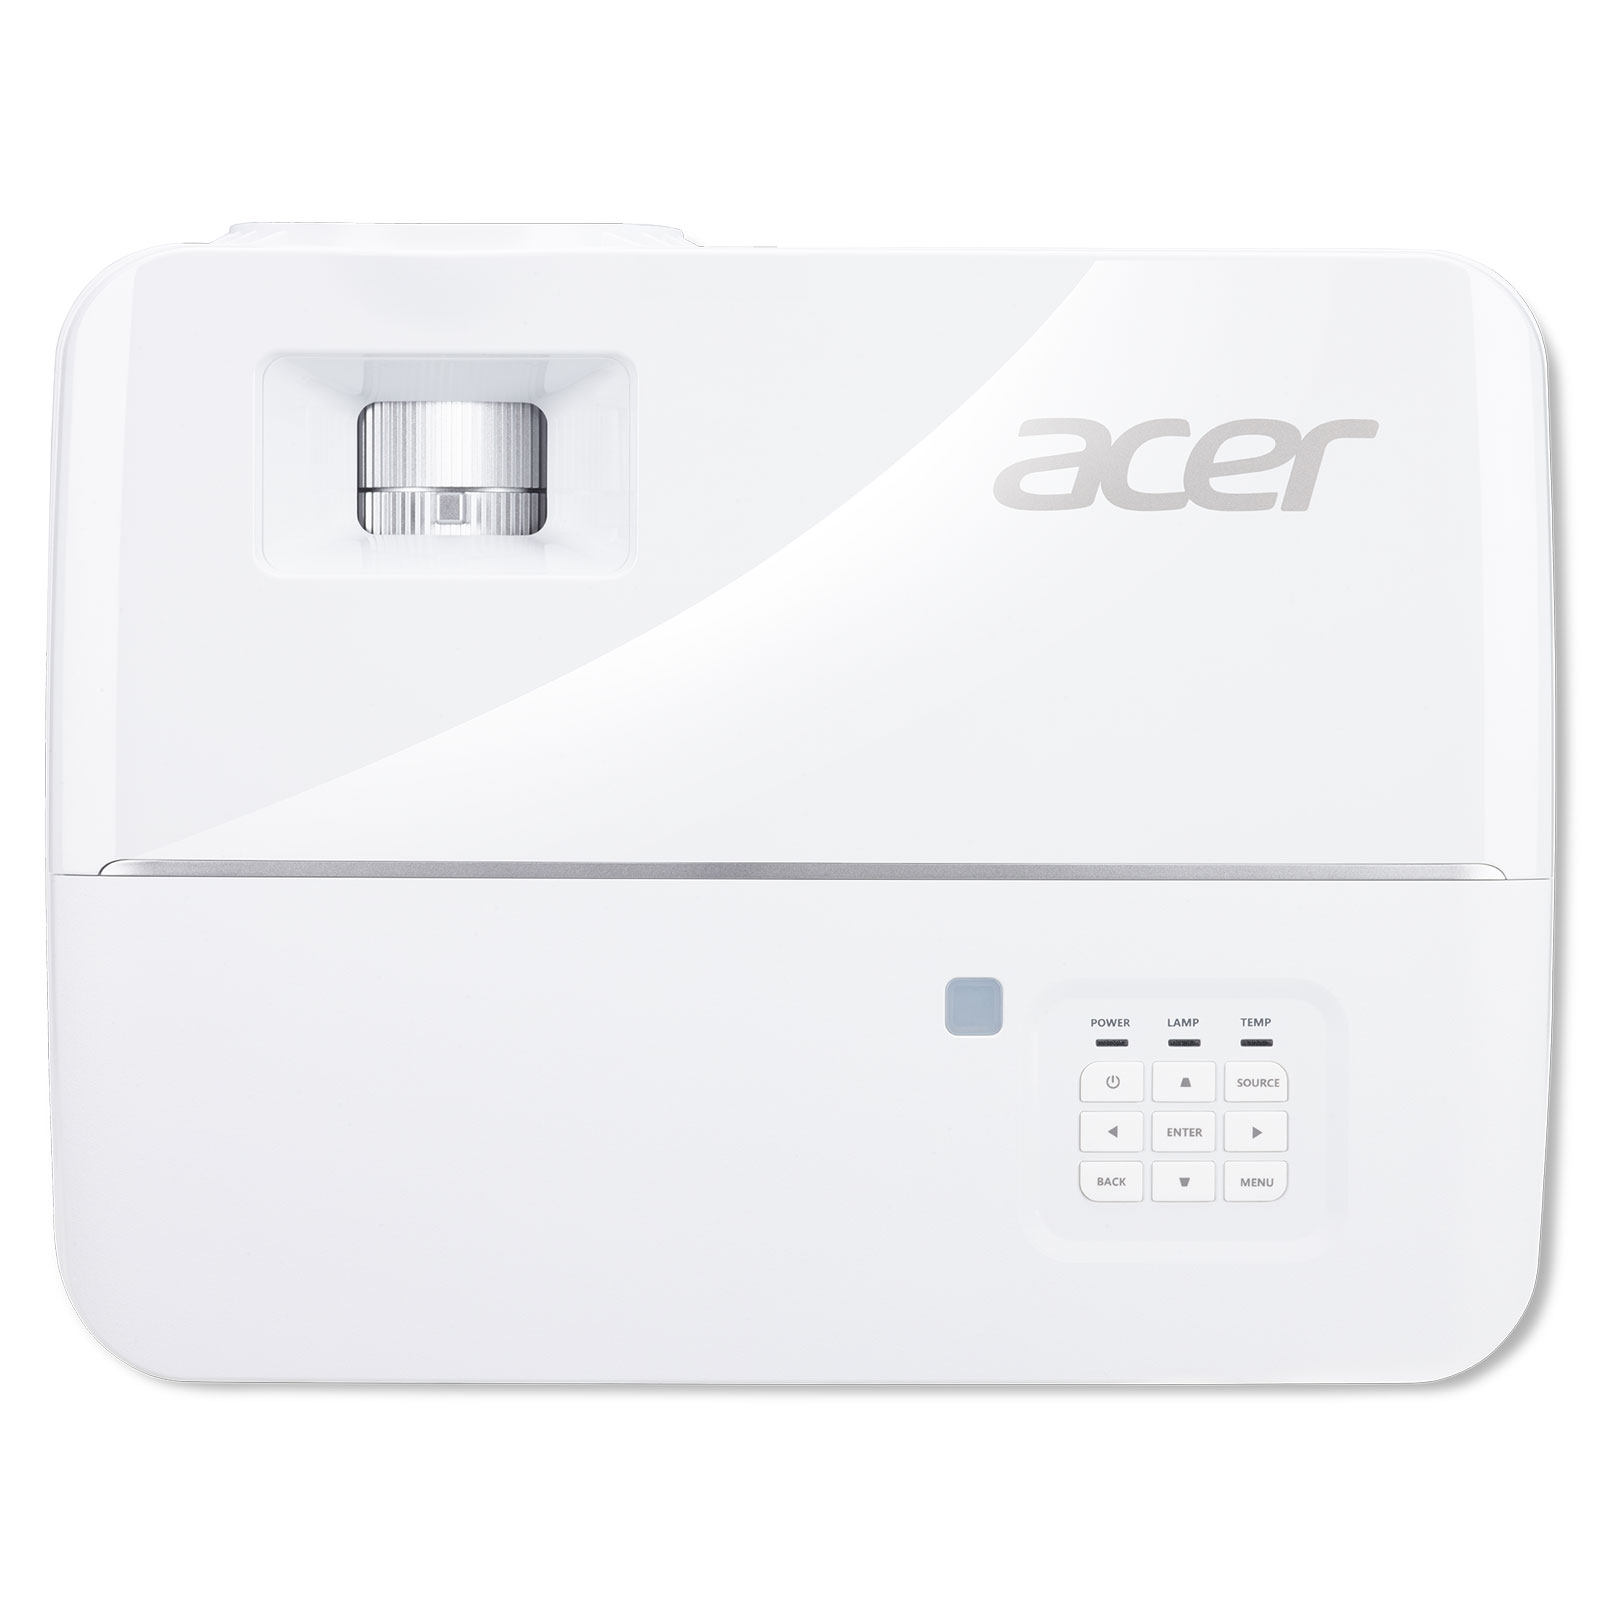 Acer V6810 pas cher